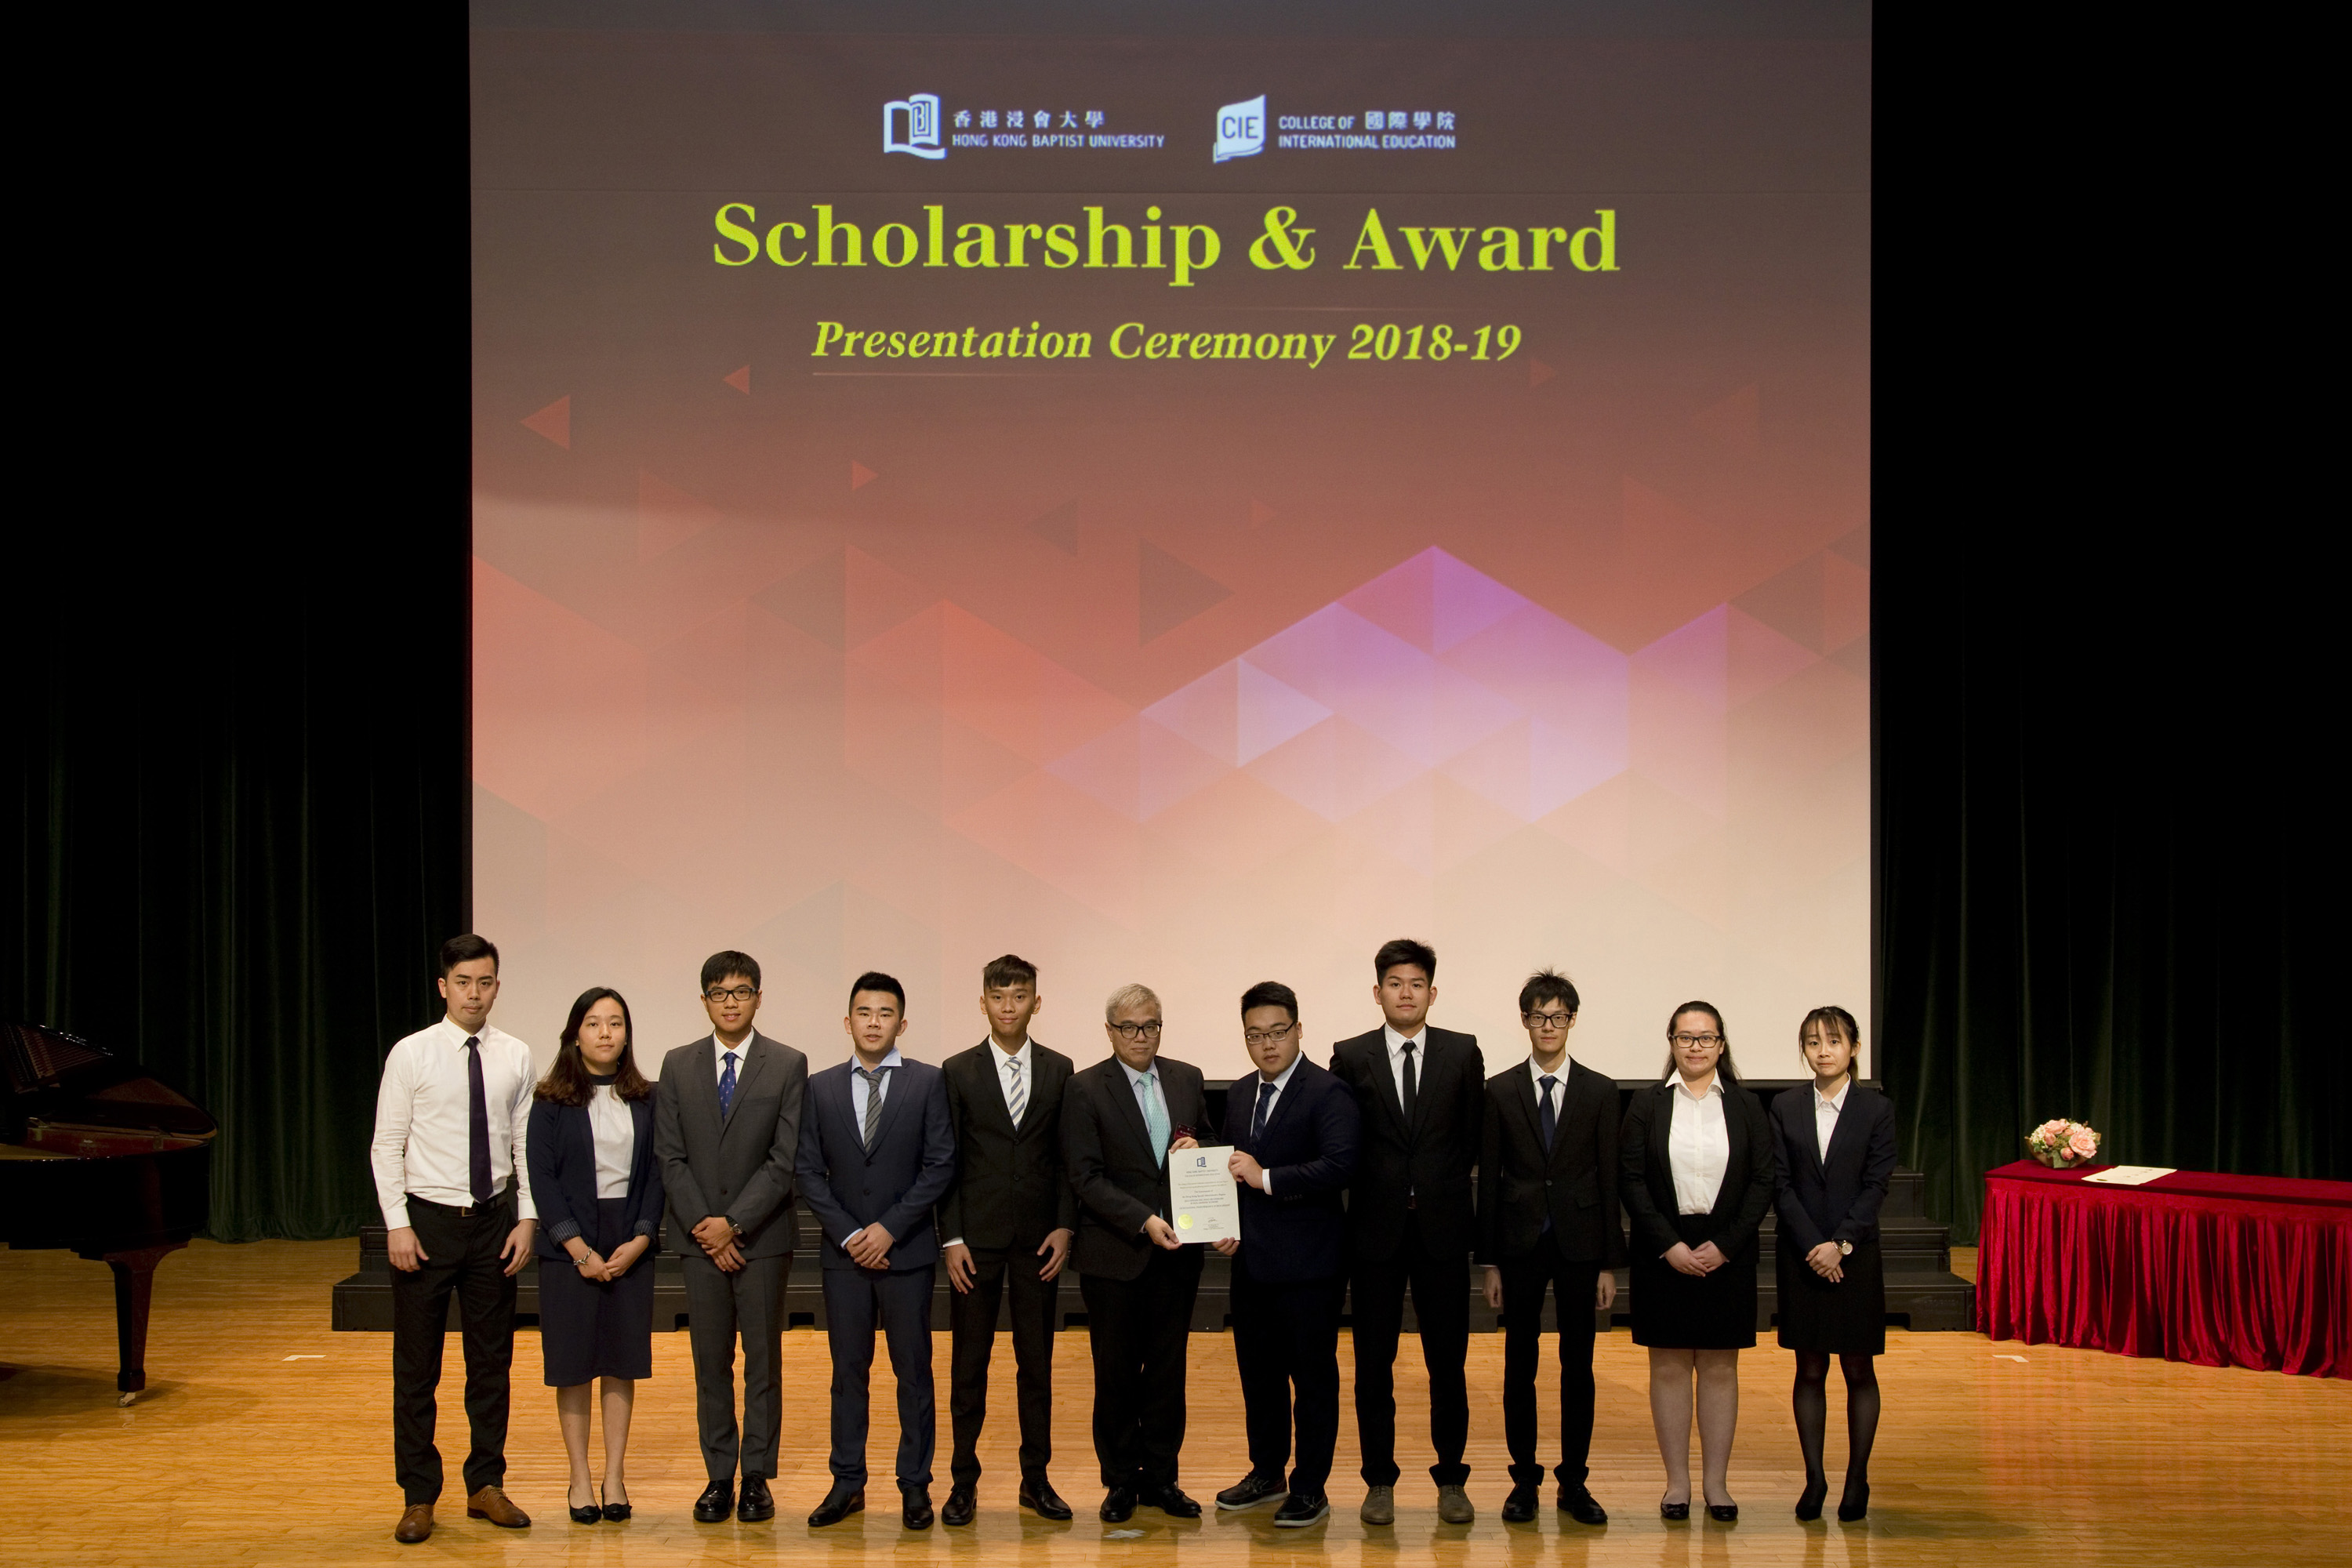 浸大国际学院奖学金赞助人及咨询委员会主席巢国明先生（中）颁发奖项予同学，以示嘉许。